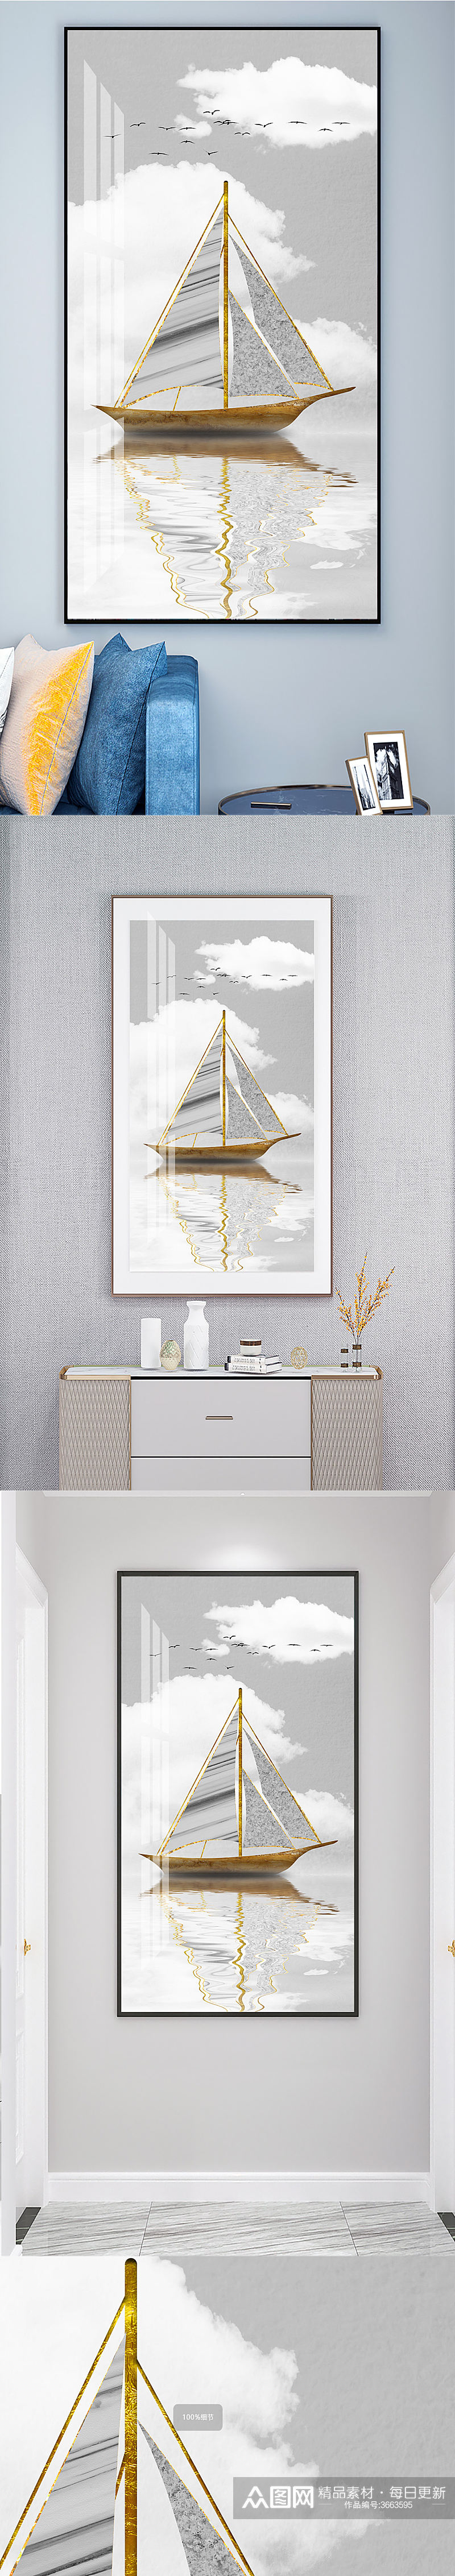 金色帆船一帆风顺装饰画素材